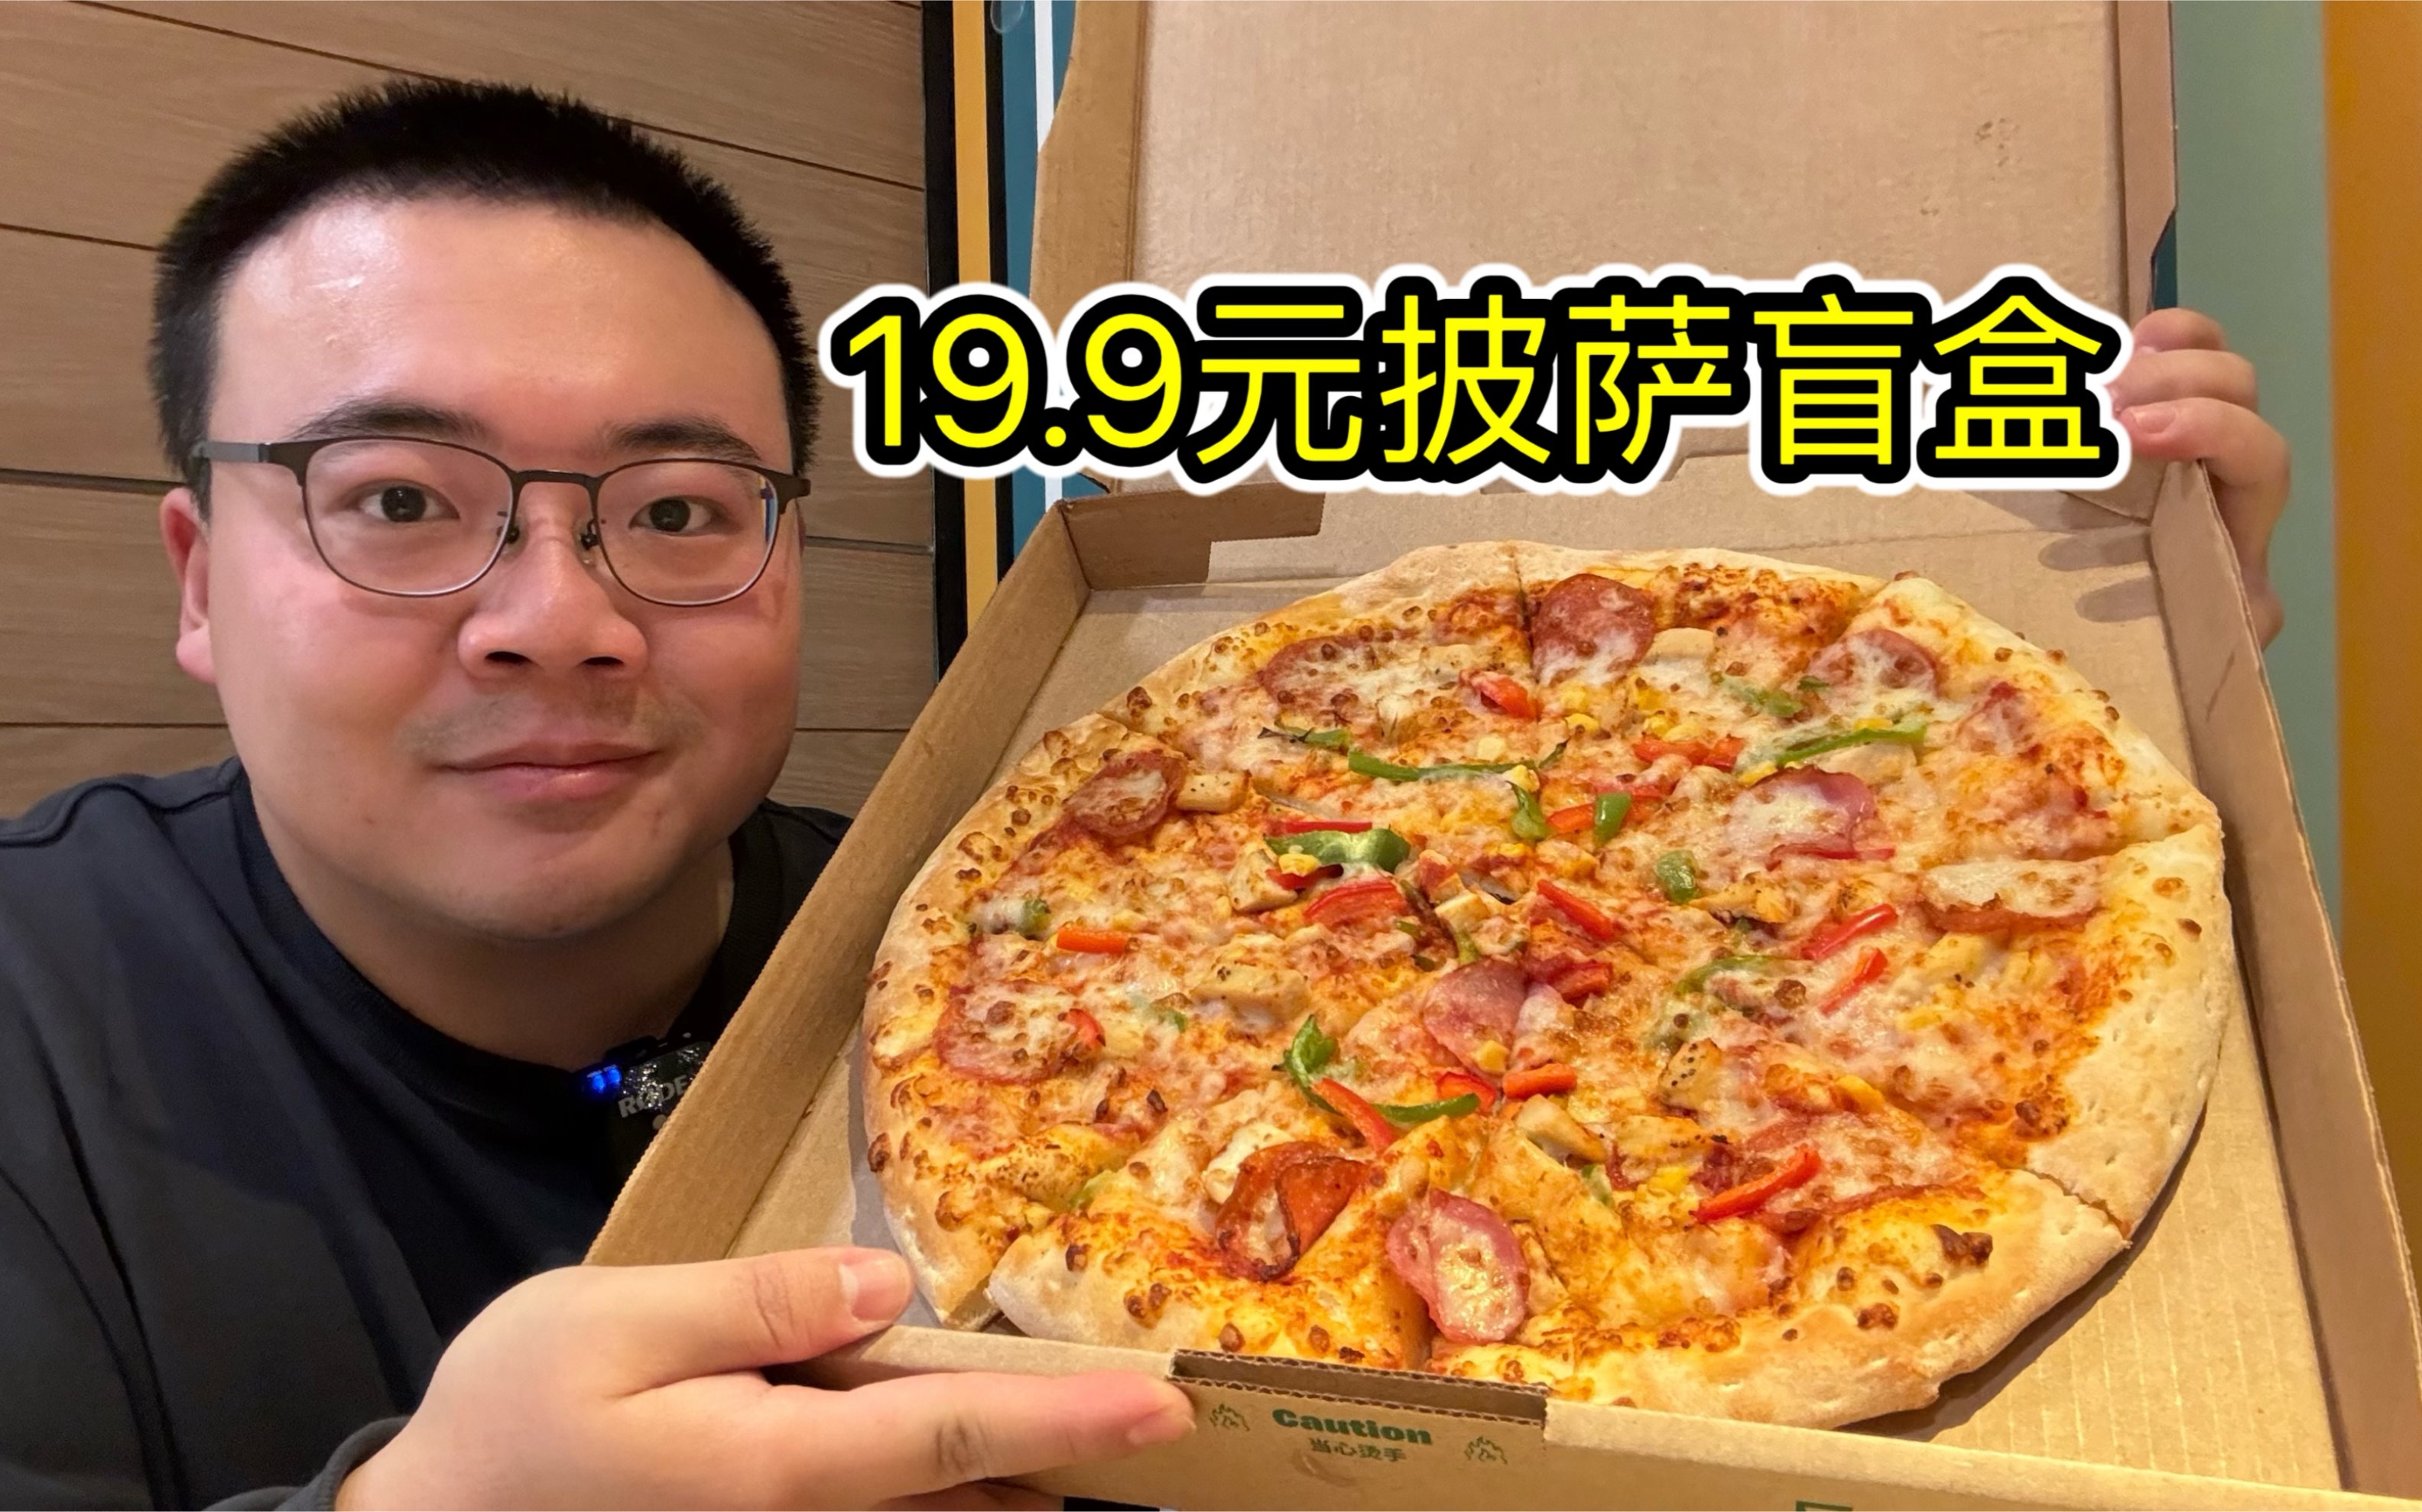 棒约翰出了个19.9的披萨捡漏活动，纯盲盒全随机，还有机会开出14寸大披萨！